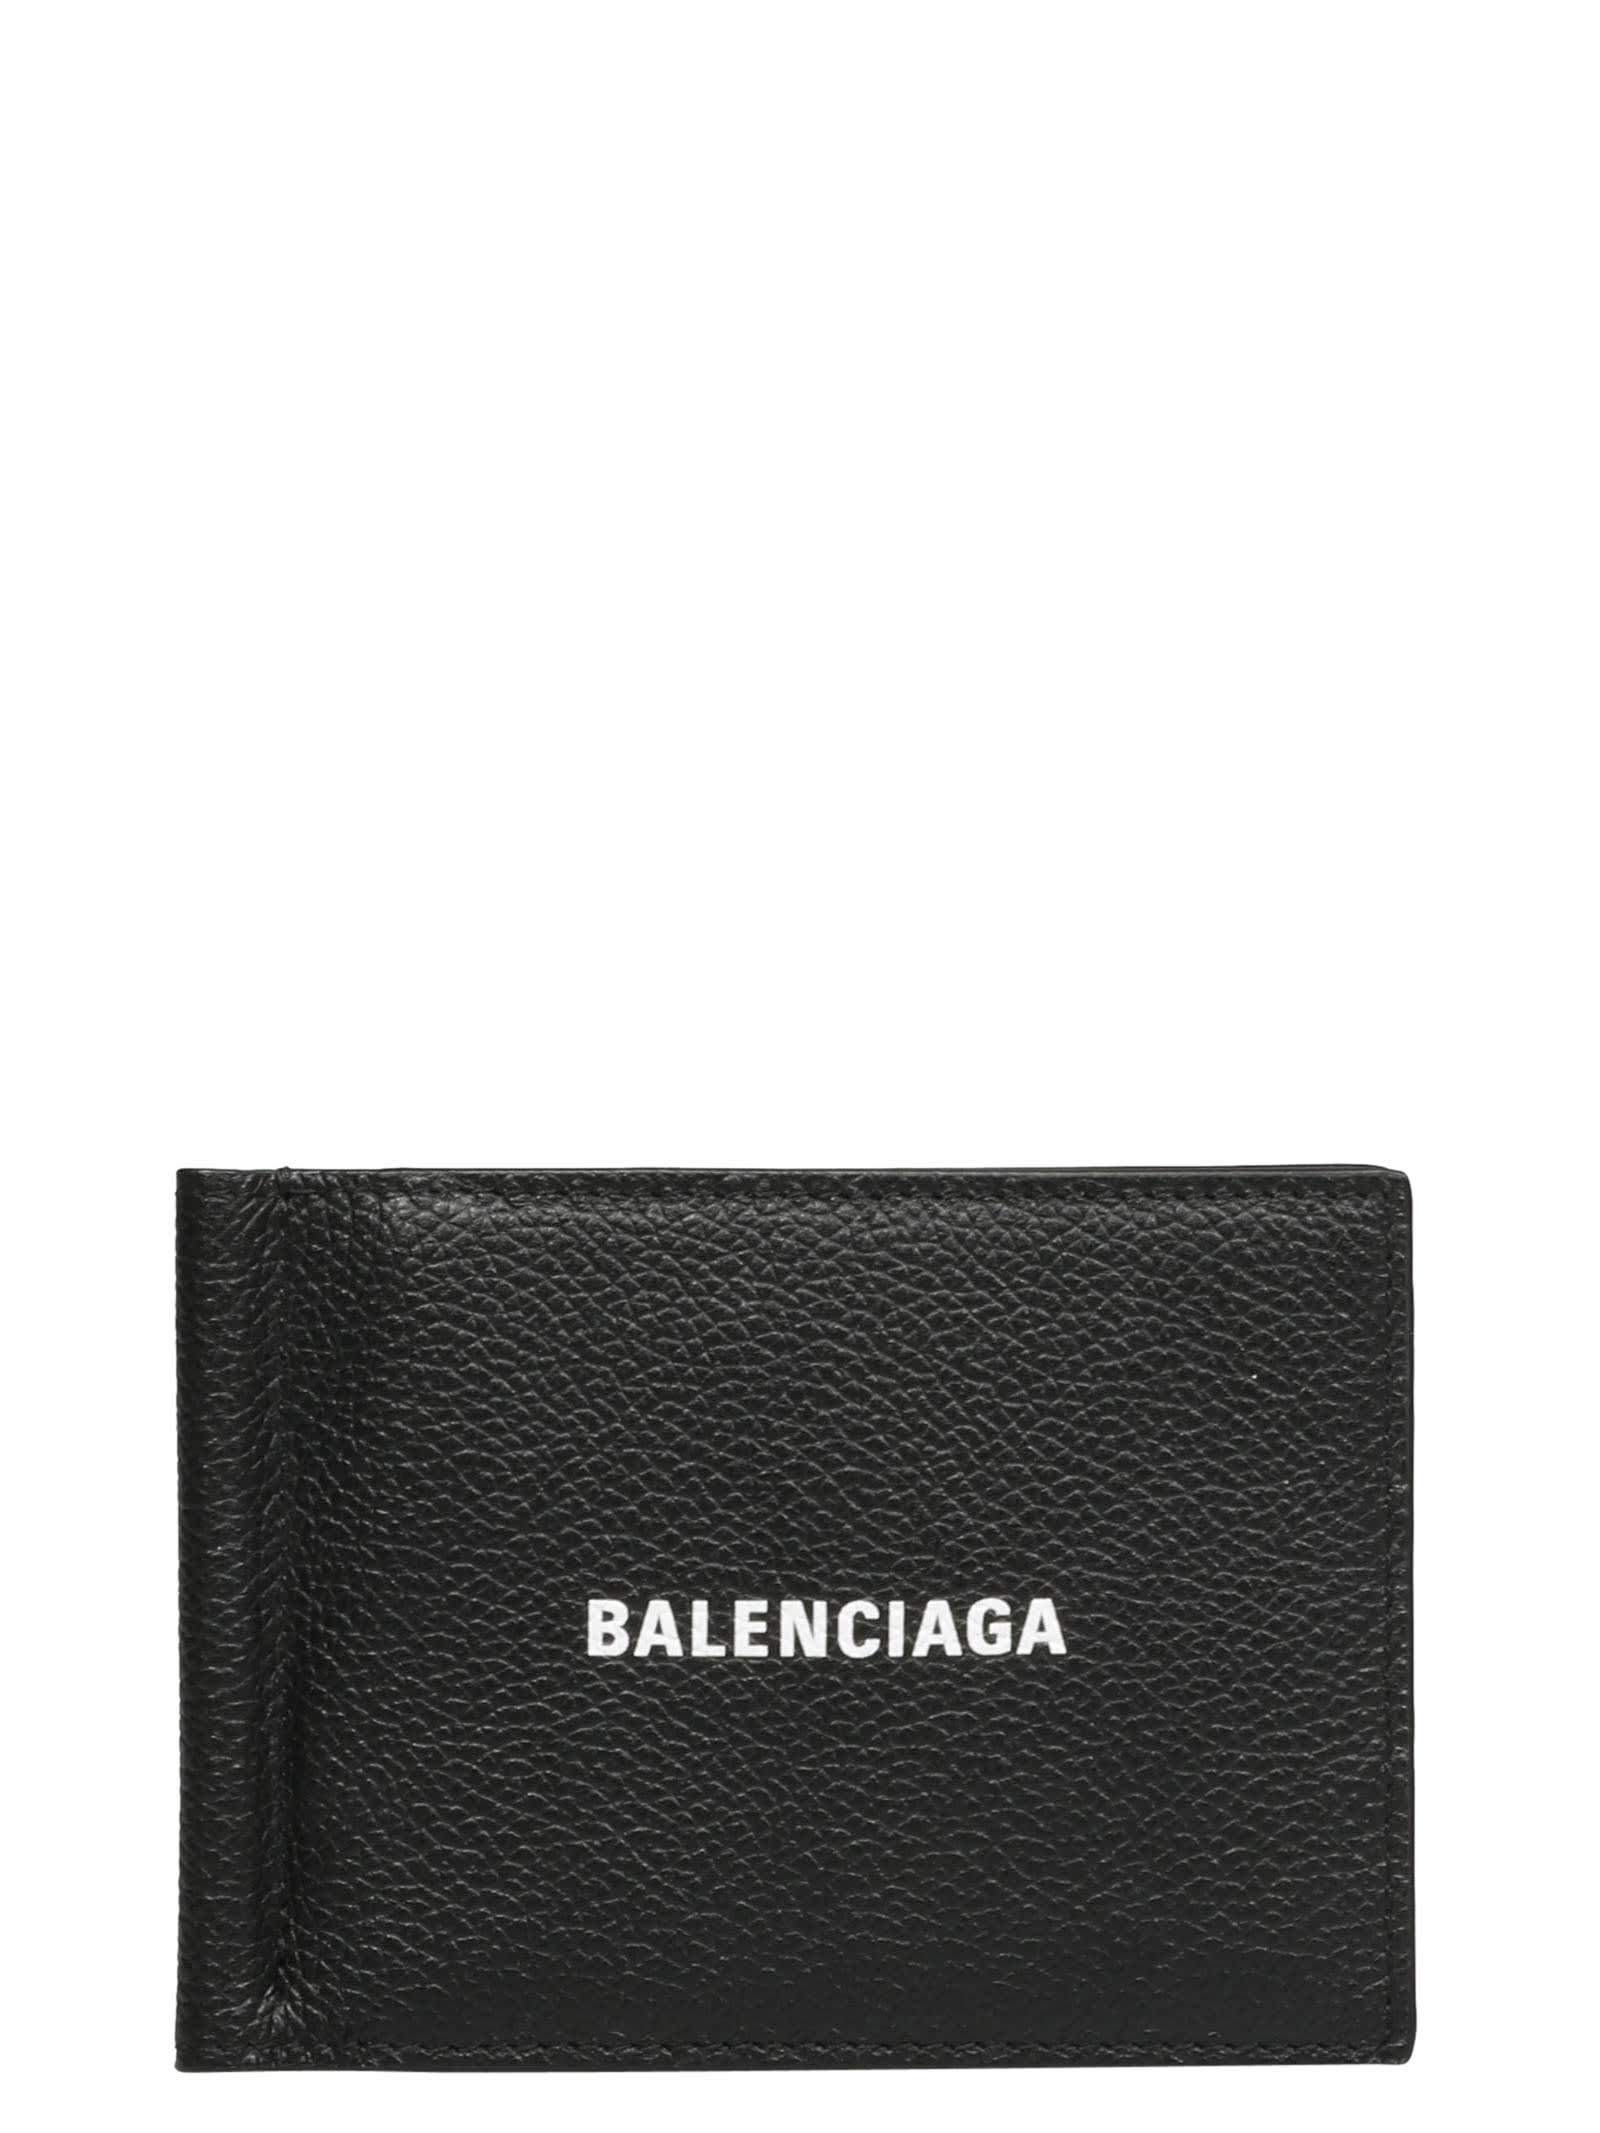 Balenciaga Cash Fol Card